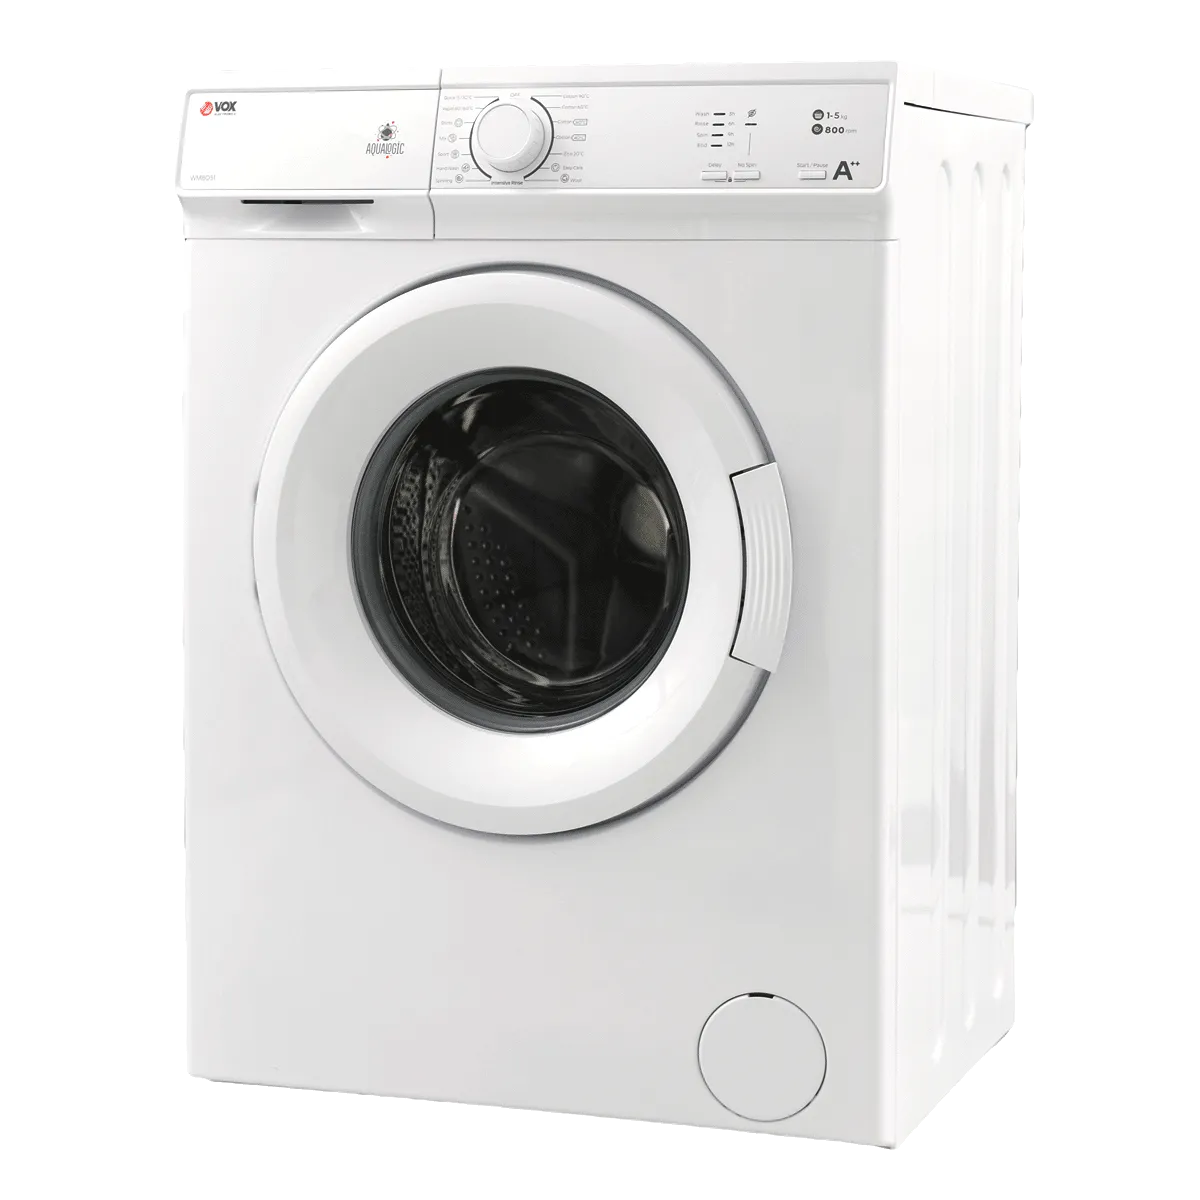 Washing machine WM8051 